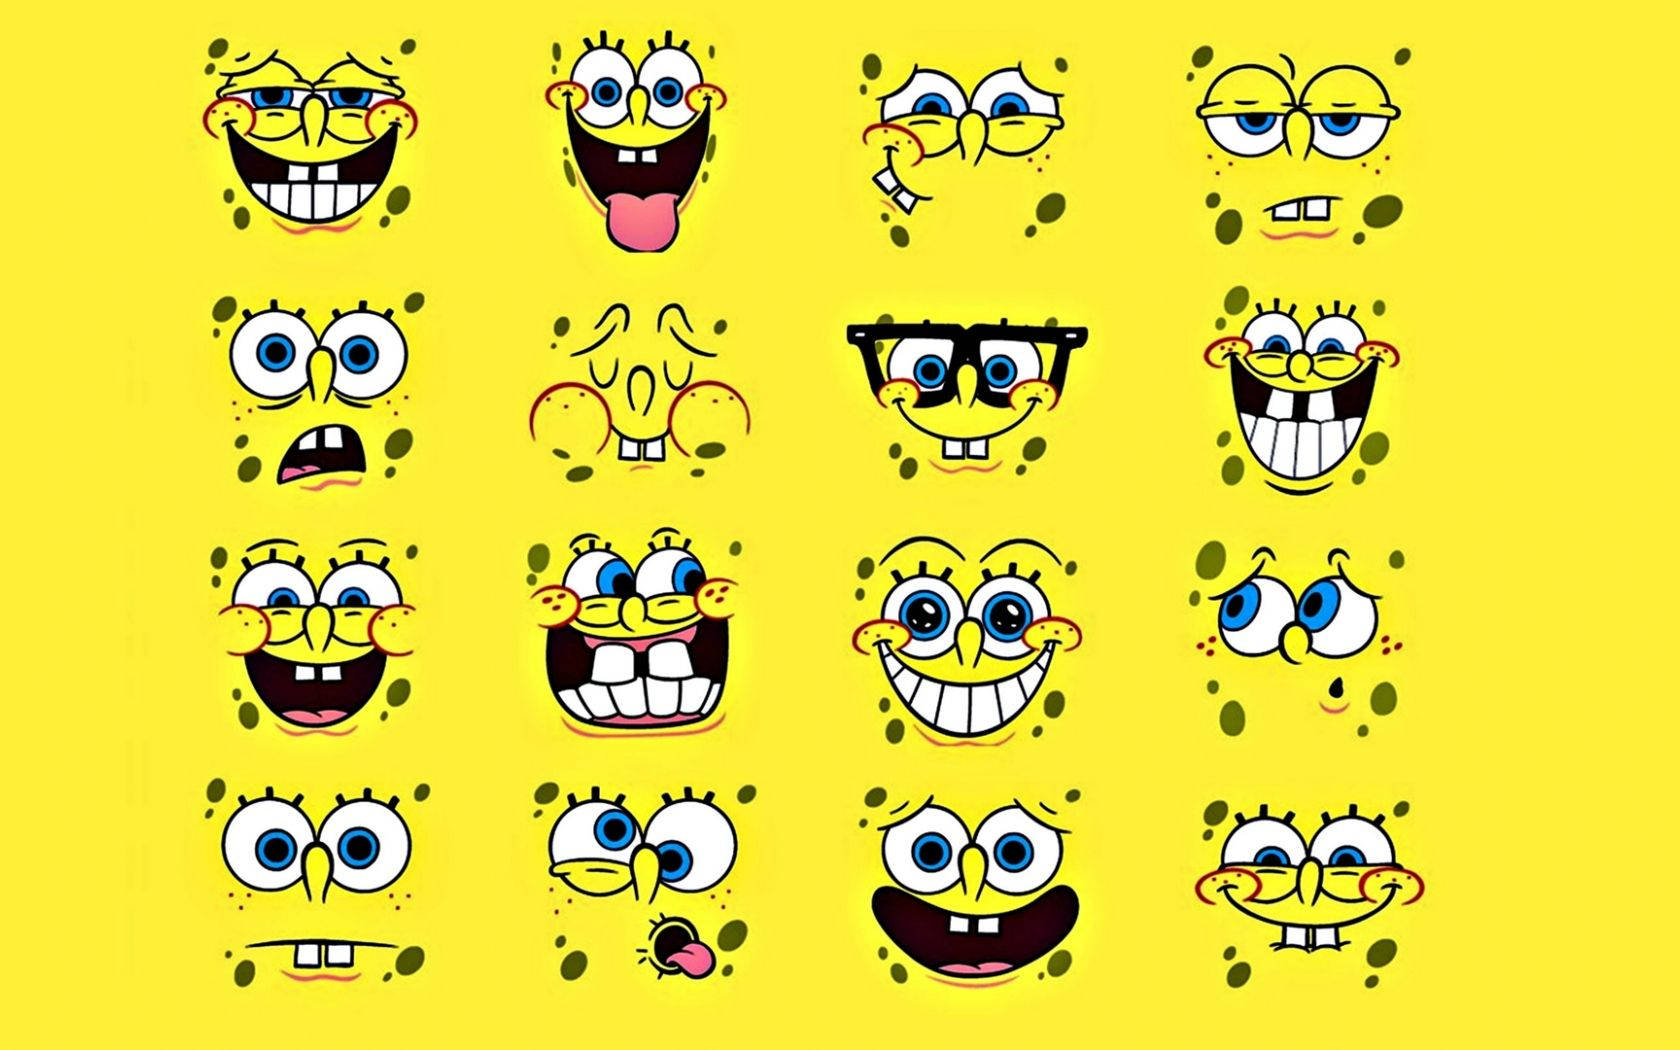 Cool Spongebob Squarepants Yellow Digital Art